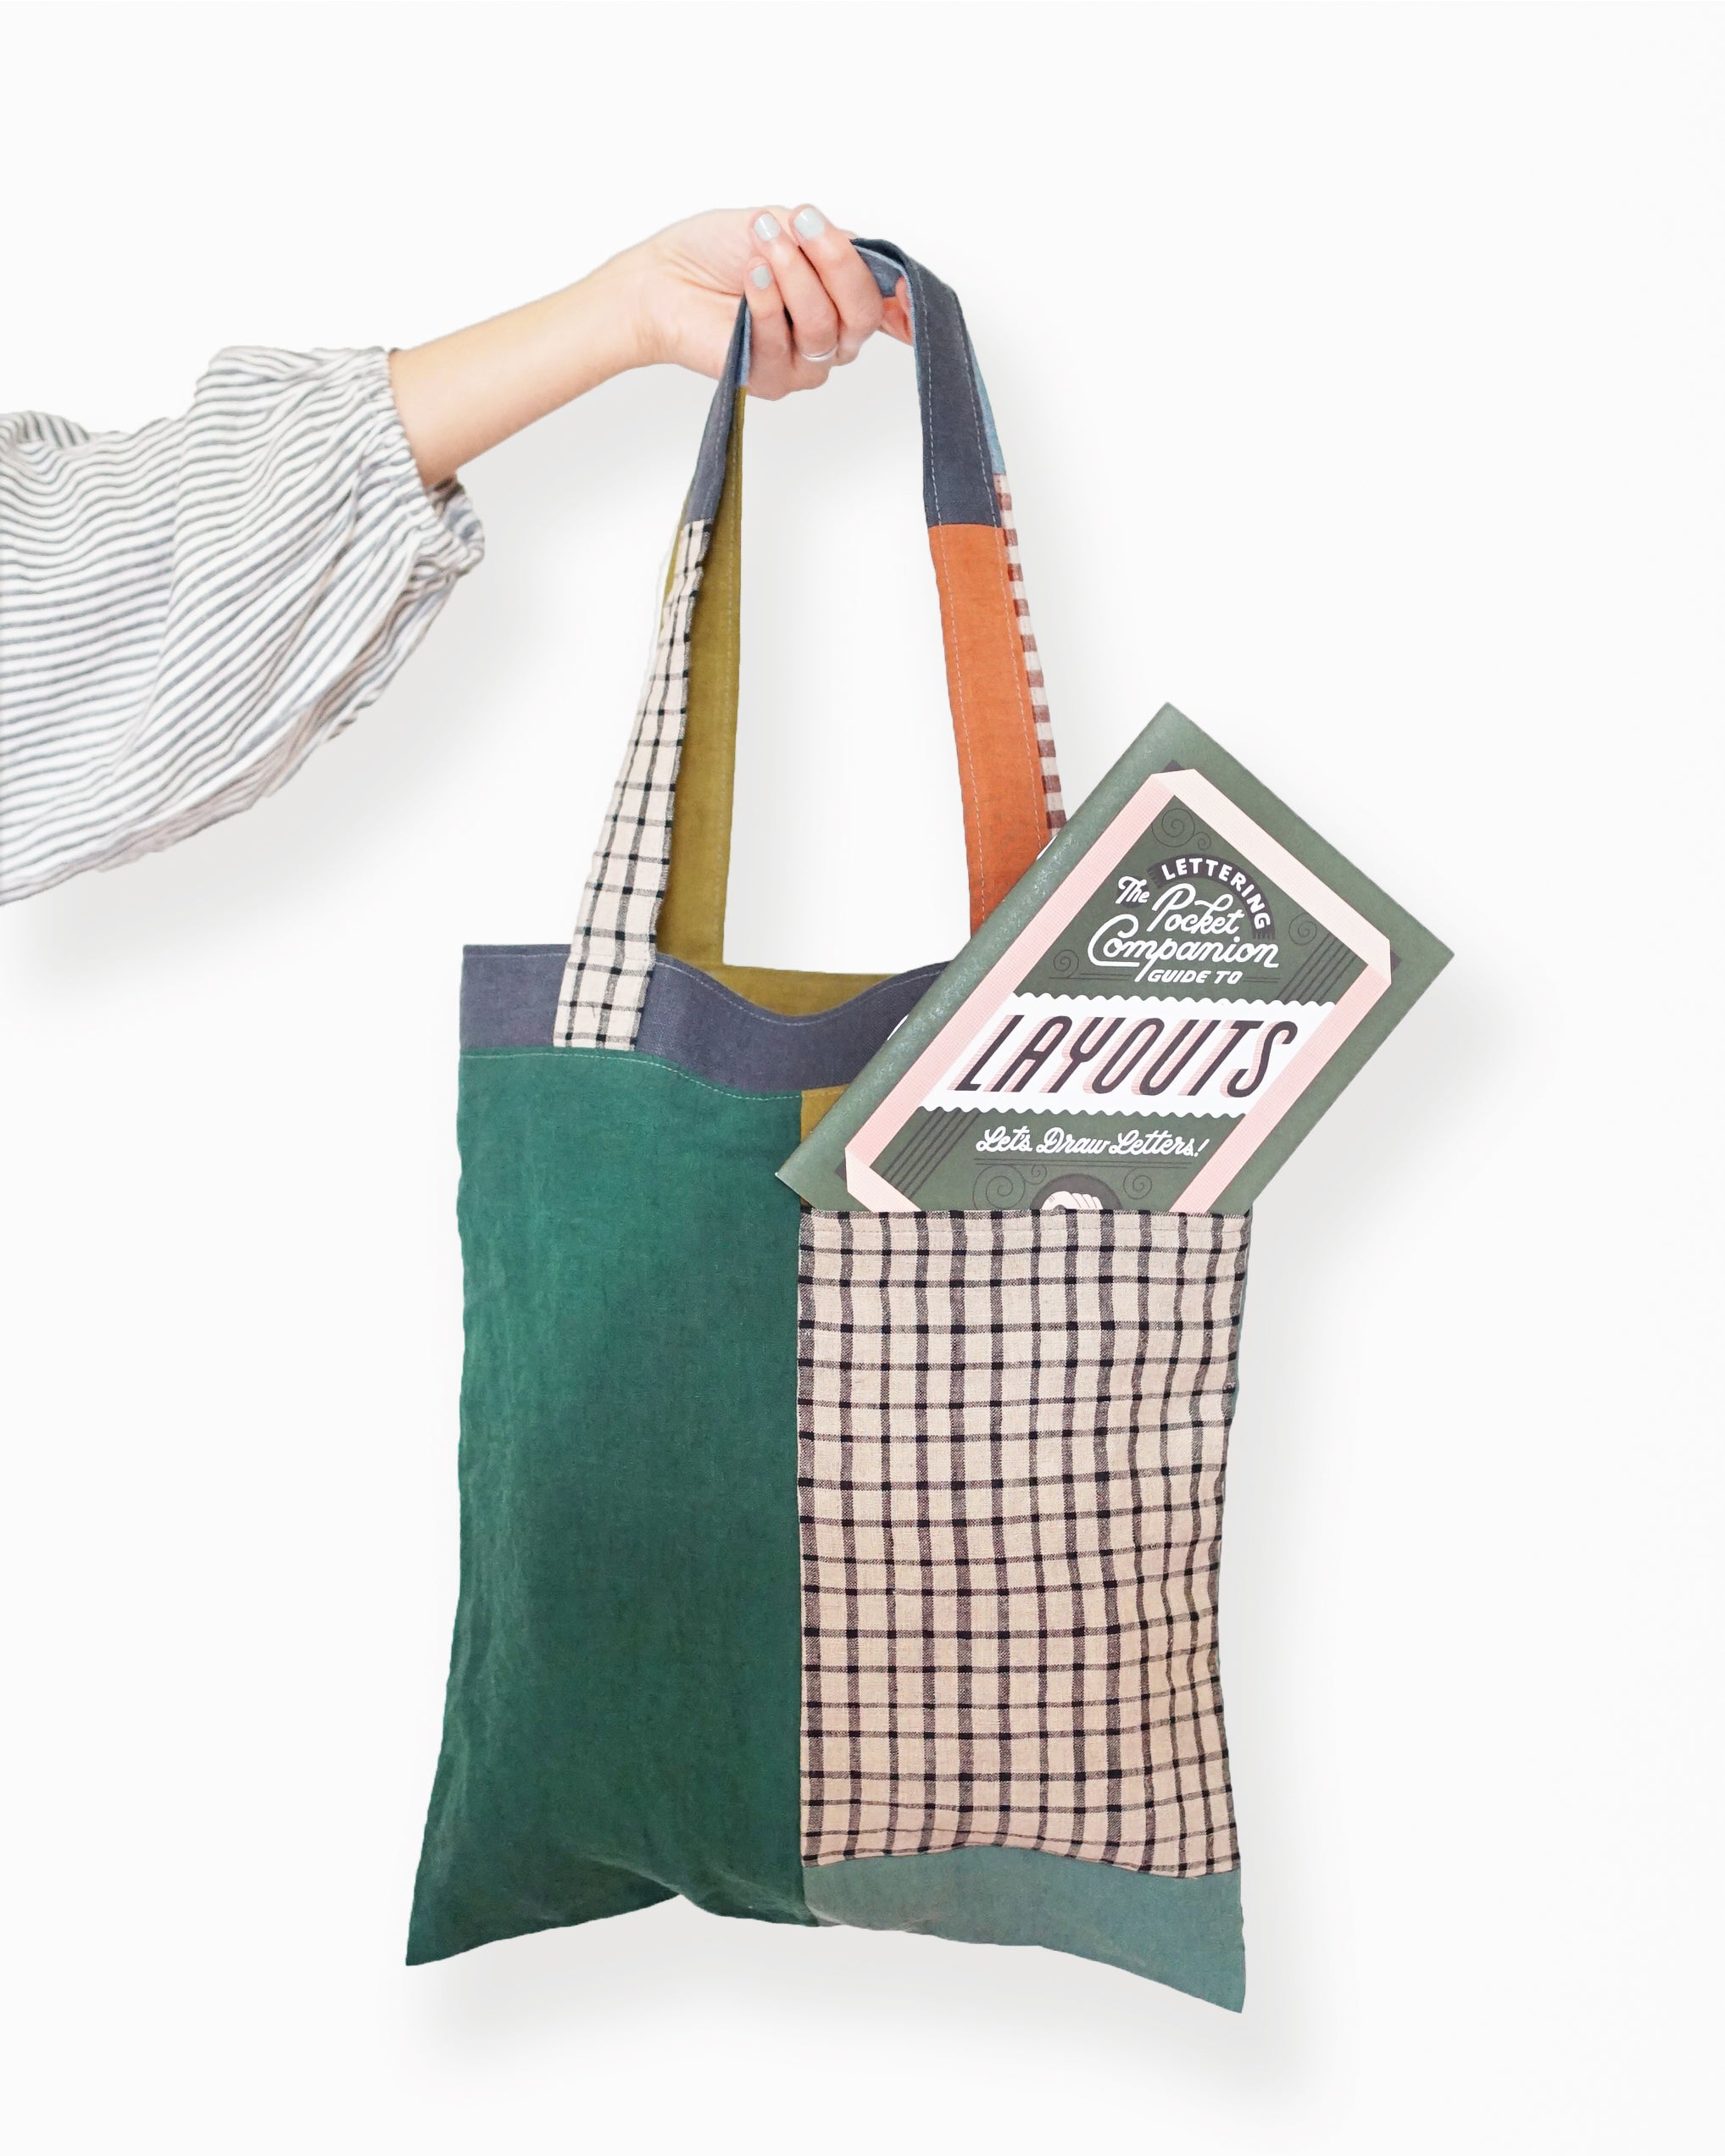 Camel Leather tote bag, Laptop bag with a large outside pocket – Avi Algrisi